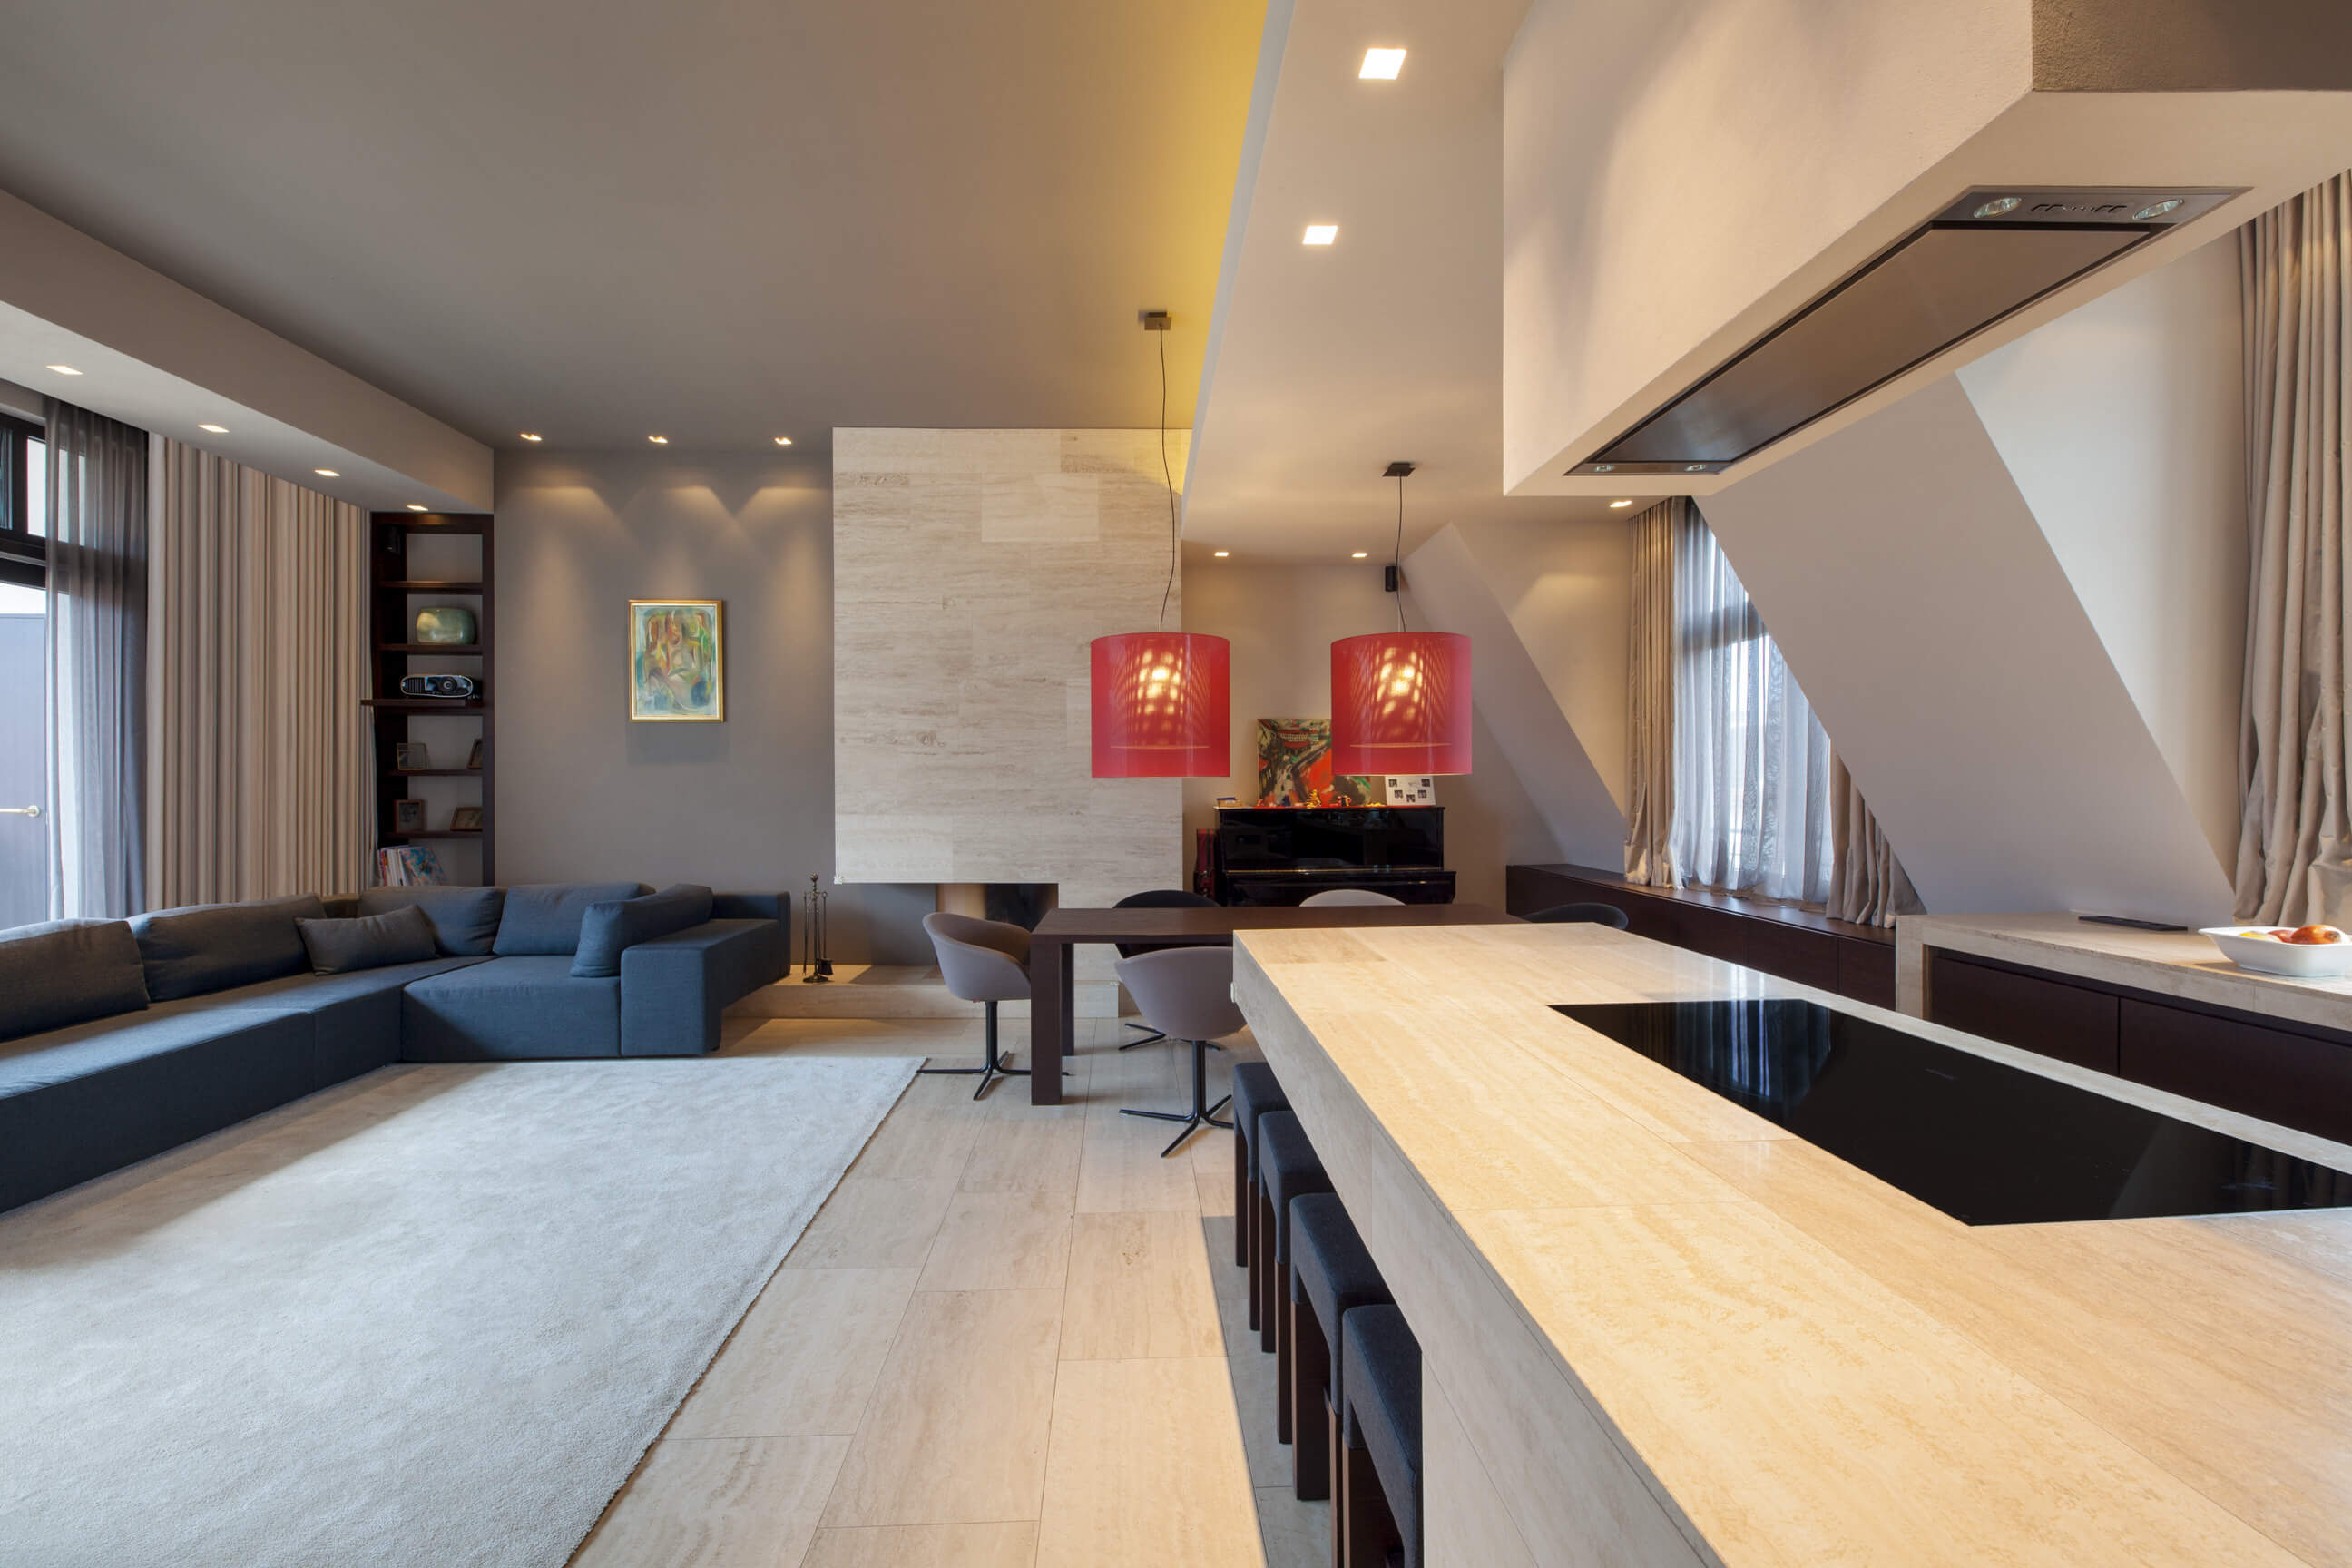 Modern gestaltete Wohnküche einer Dachgeschosswohnung mit Vorhang, Gardinen und Wandgestaltungen in warmen Farben